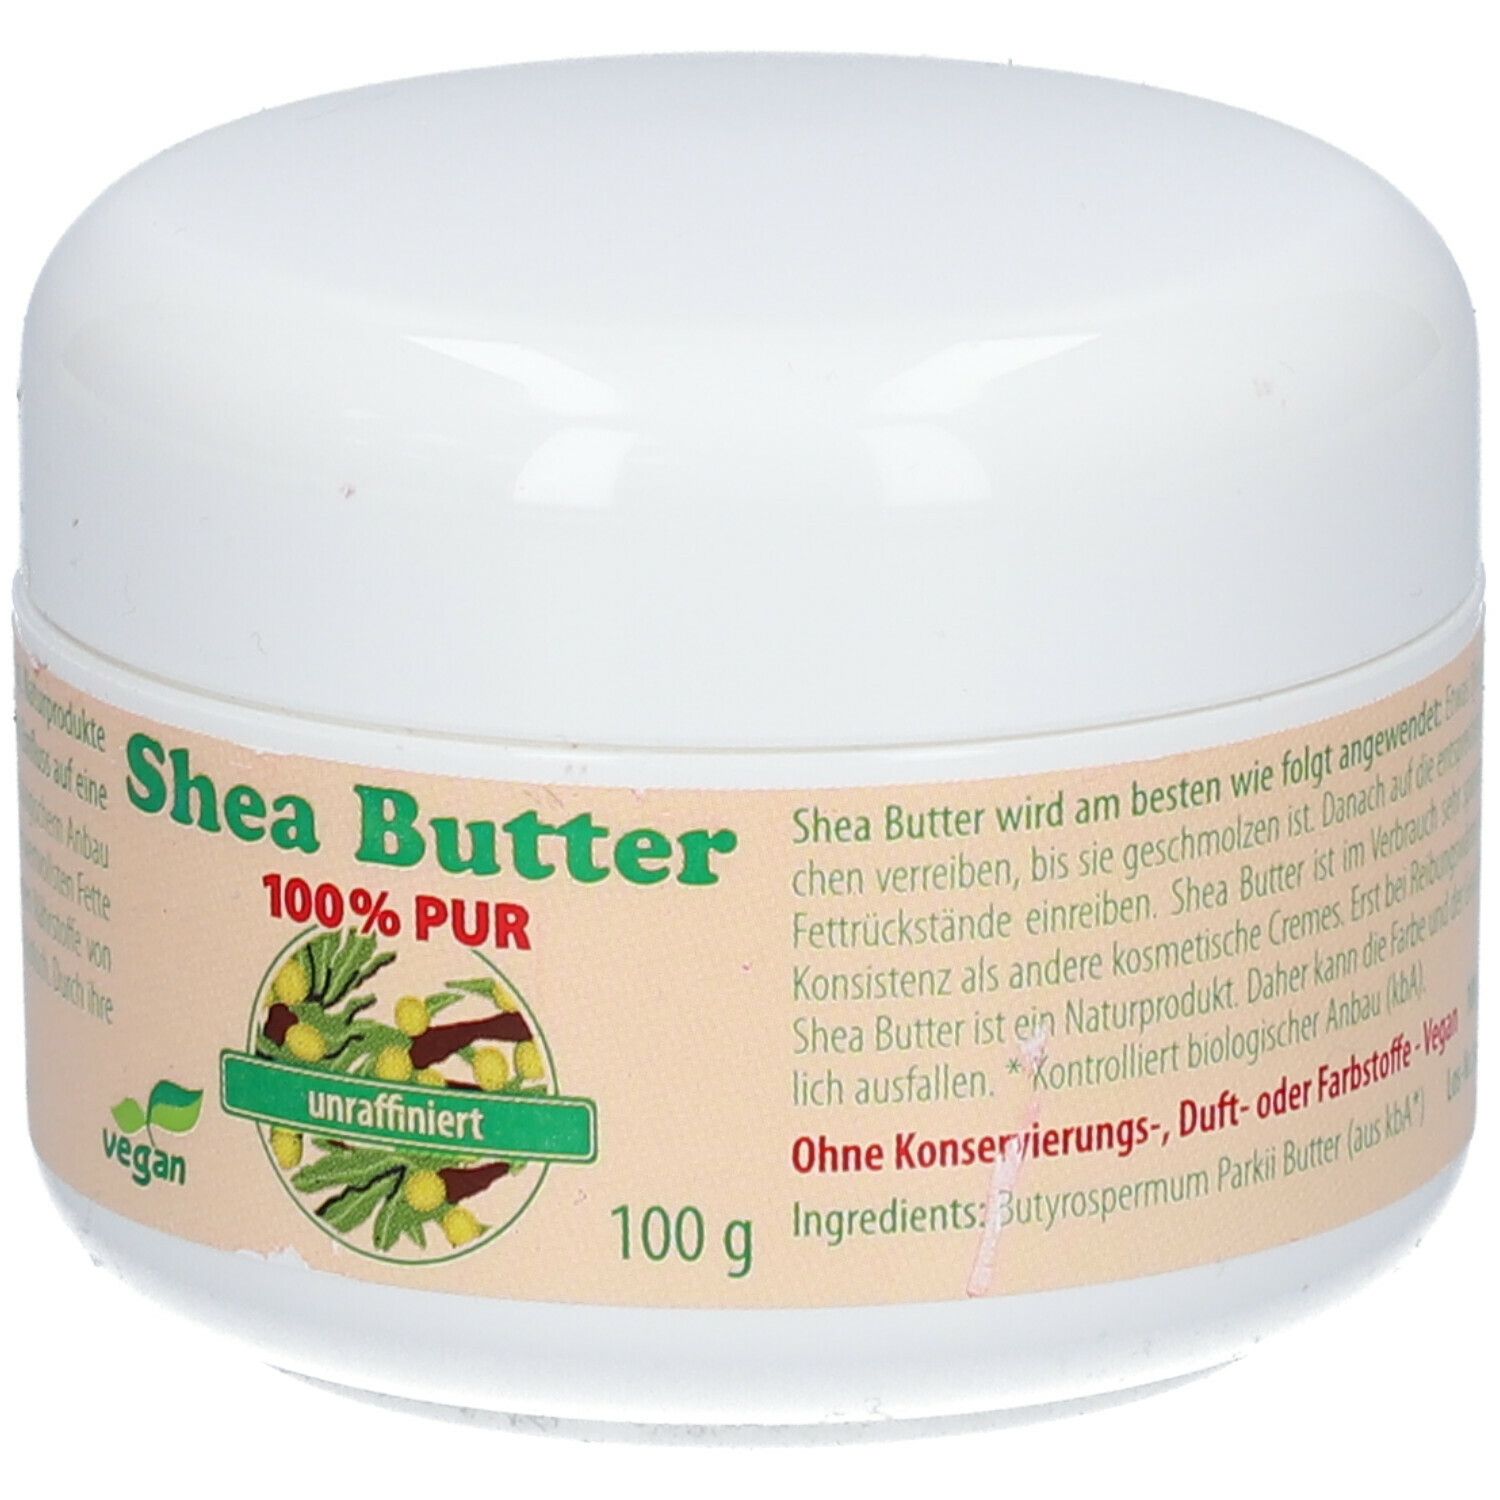 Shea Butter 100% pur - unraffiniert